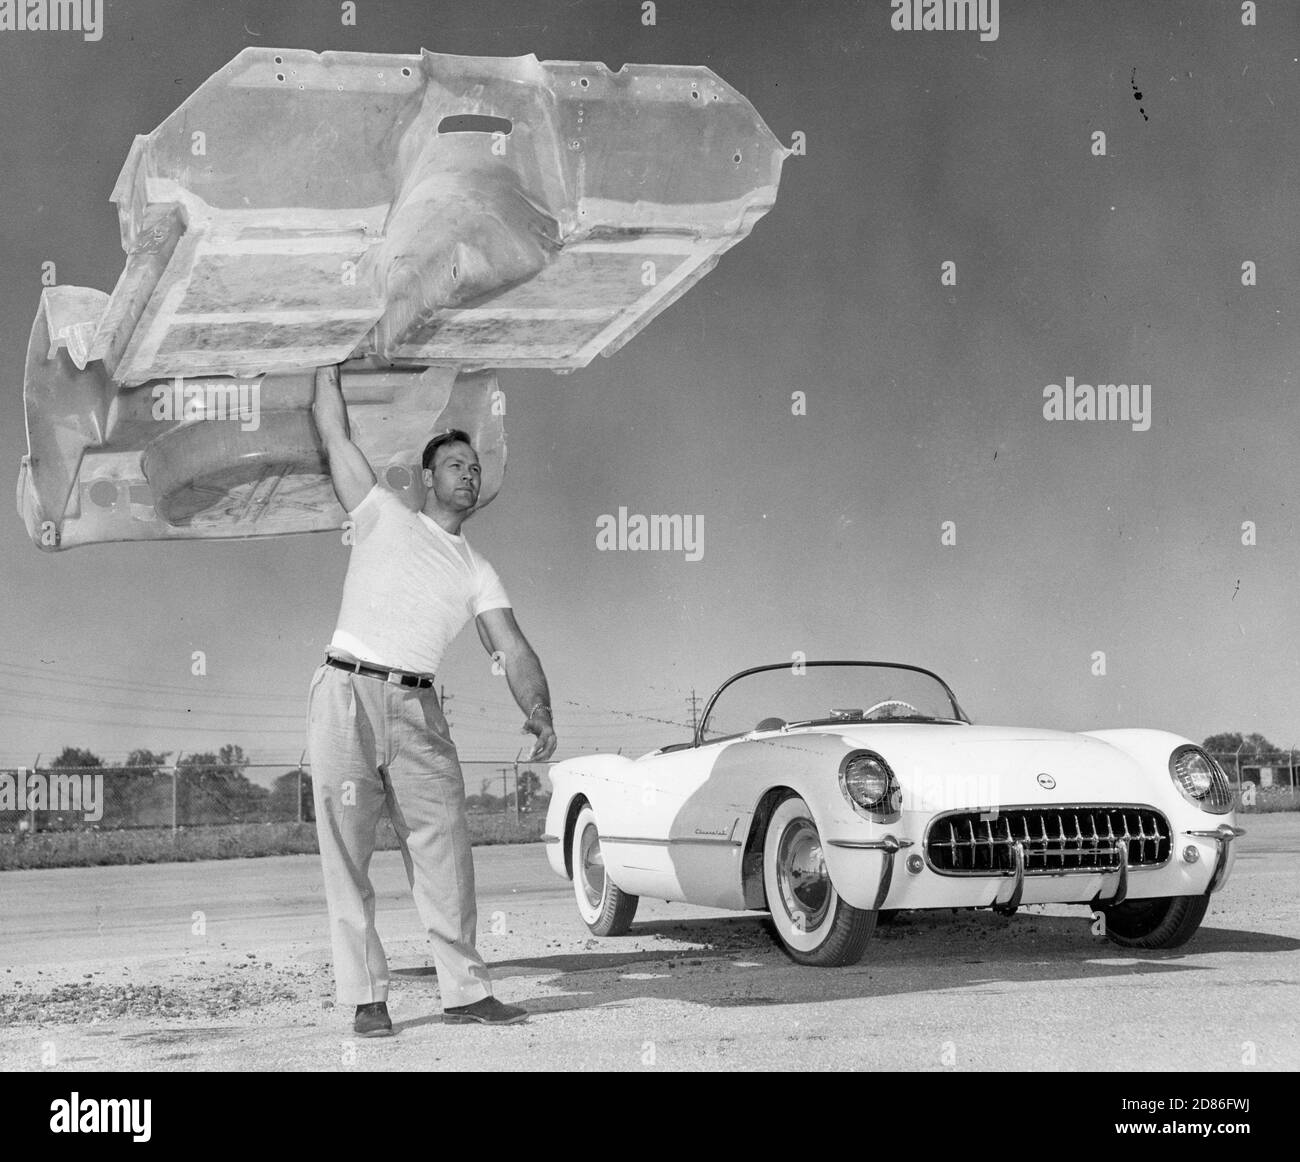 Un homme tient la carrosserie de la Corvette de Chevrolet. Sa construction légère mais robuste est rendue possible avec de la fibre de verre, Detroit, MI, 1958. (Photo de Chevrolet/RBM Vintage Images) Banque D'Images